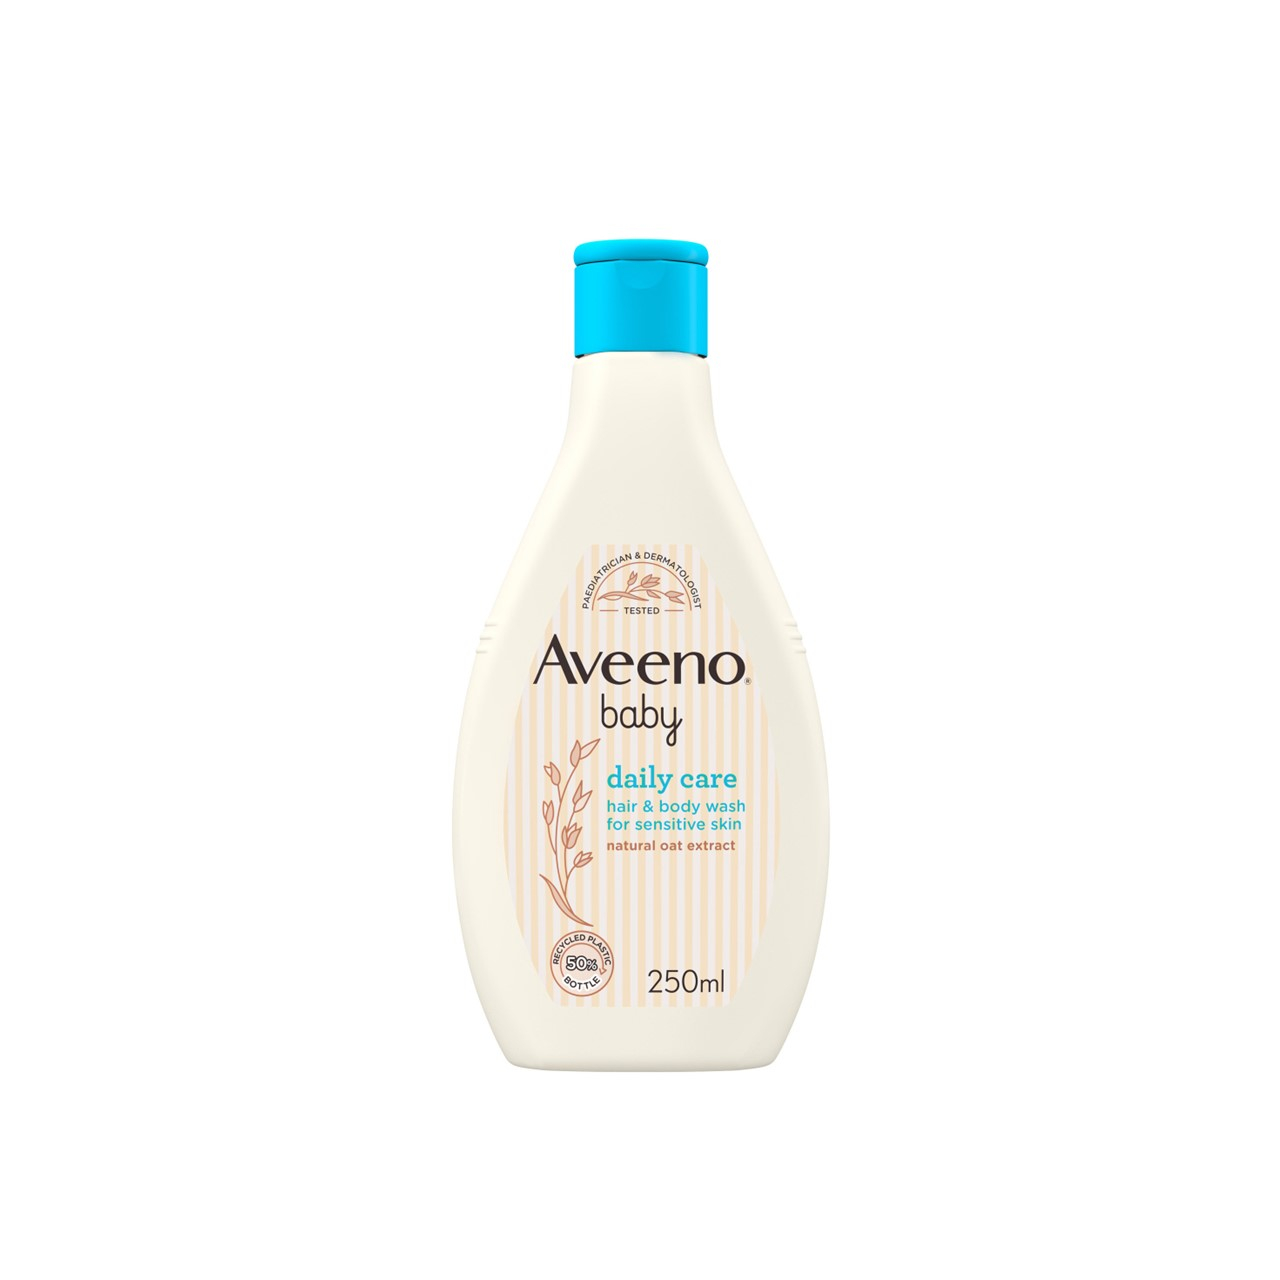 Compra Aveeno Baby Daily Care Hair & Body Wash 250ml · El Salvador